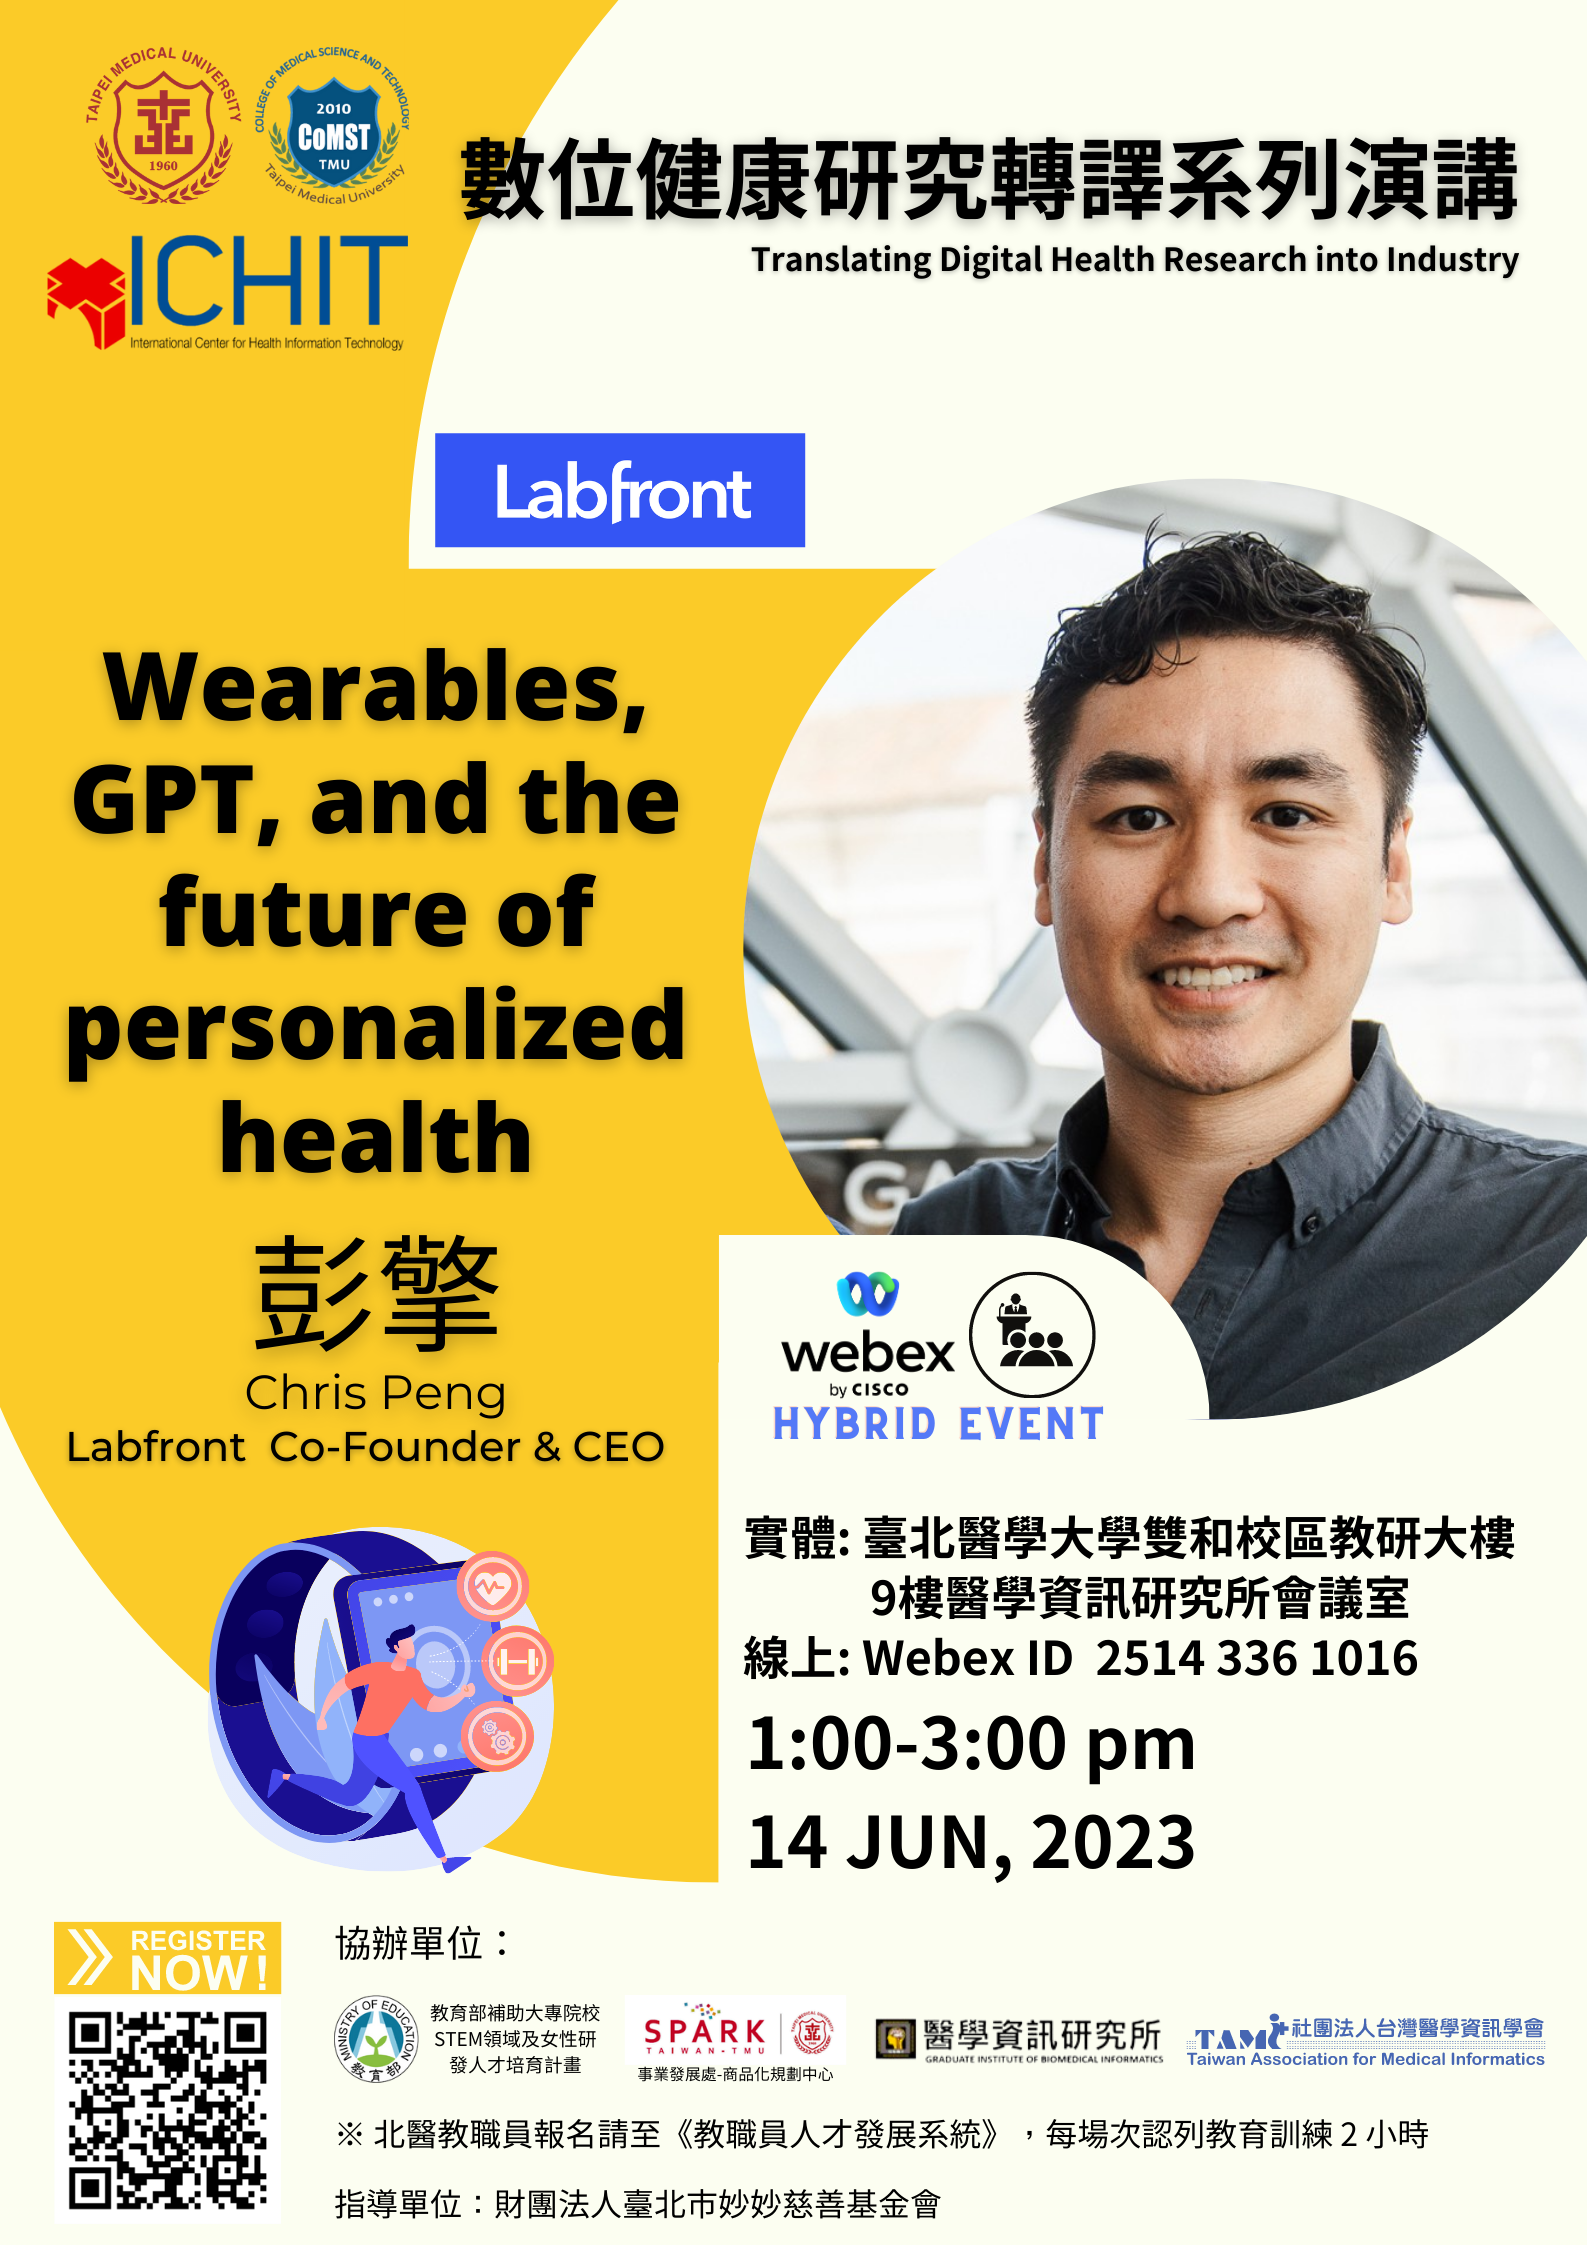 本次講座邀請到跨國醫療資訊新創公司Labfornt執行長彭擎 (Chris Peng)，分享講題「Wearables, GPT, and the future of personalized health​​​​​​​」。Labfront專注於解決研究人員對於醫療研究數據及穿戴式裝置數據取得不易的問題，提供從穿戴裝置、數據的雲端平台彙整到協助分析的一站式服務，協助健康產業以更有效率的方式、更便宜的價格進行個案數據收集、追蹤與管理。